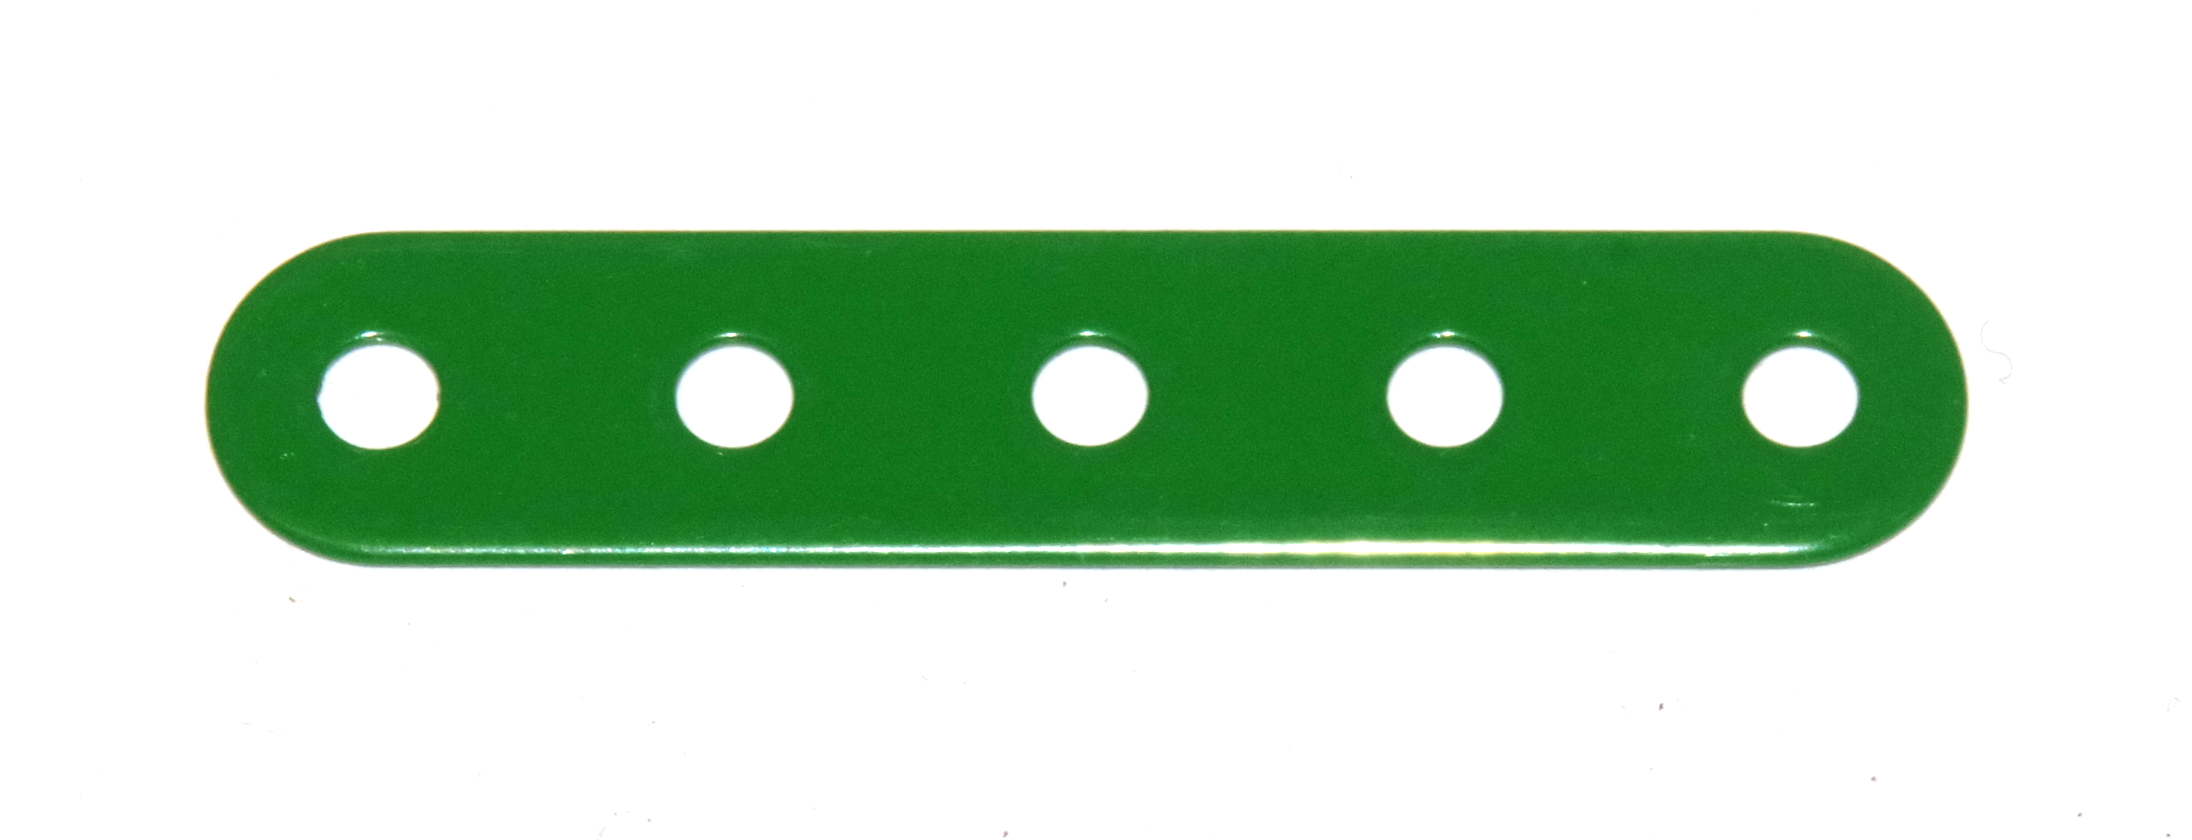 5 Standard Strip 5 Hole Modern Green Original